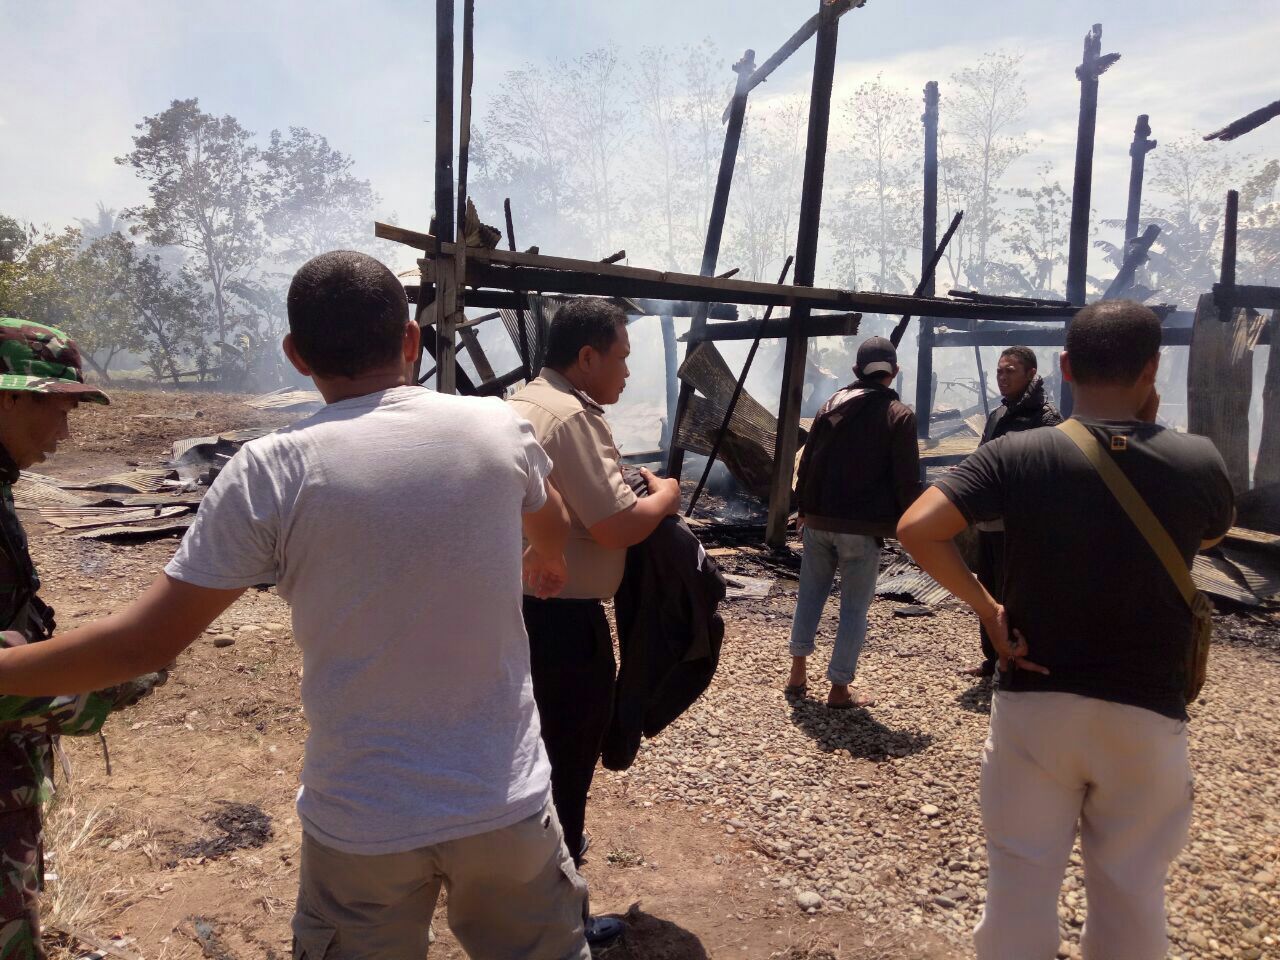 Rumah pelaku pembunuhan yang dibakar oleh massa di di Dusun Bacu-bacu, Desa Liu, Kecamatan Majauleng, Kabupaten Wajo